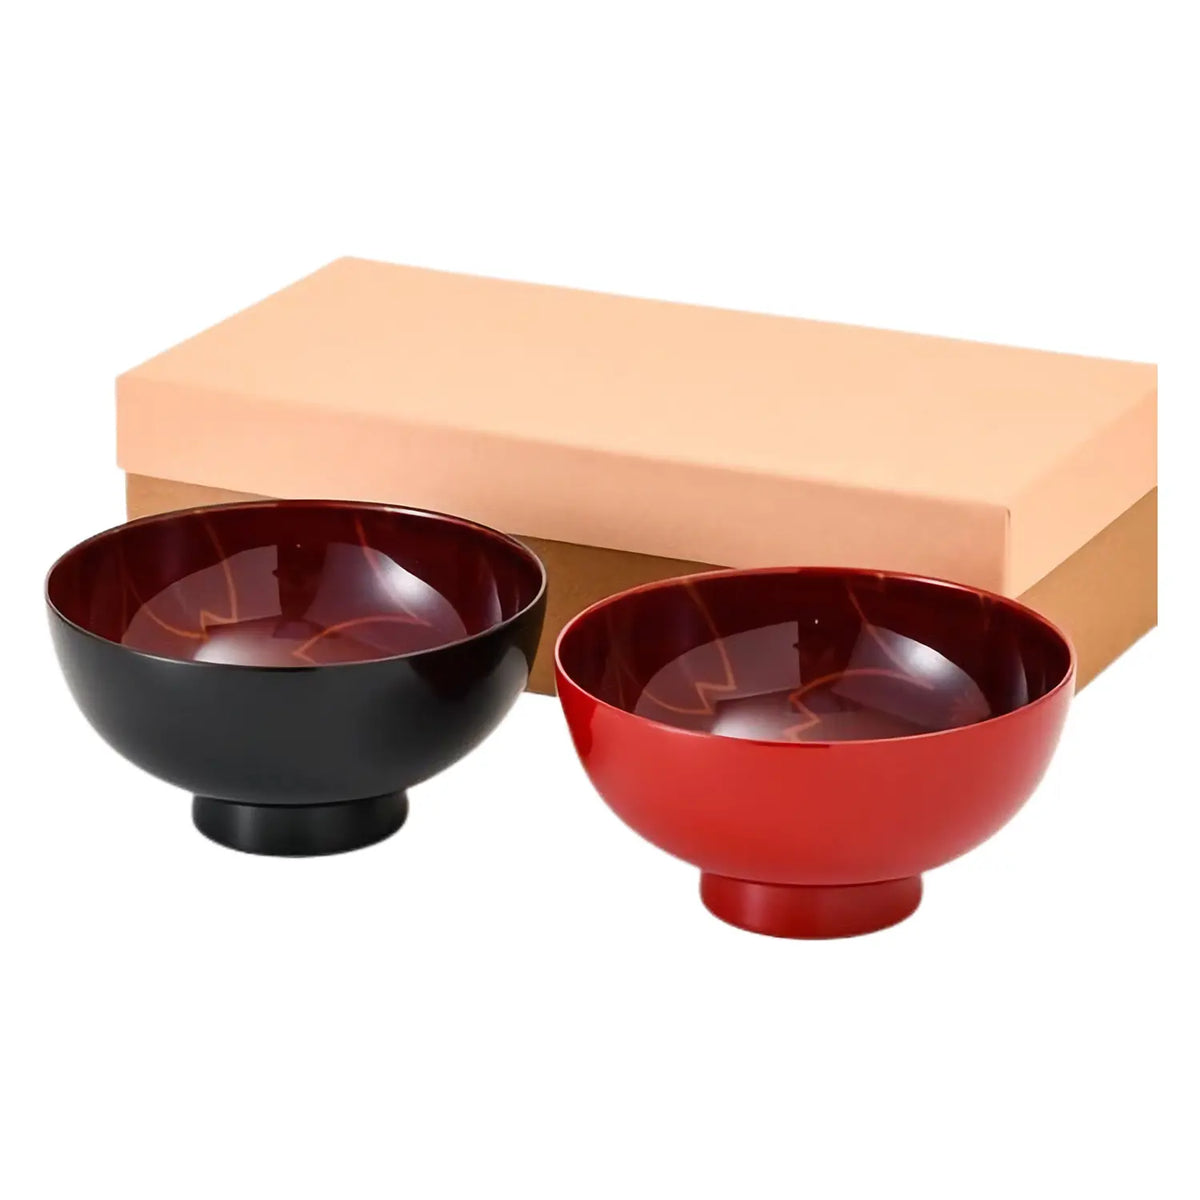 Echizen Shikki Synthetic Resin Couple Bowls Sandalwood